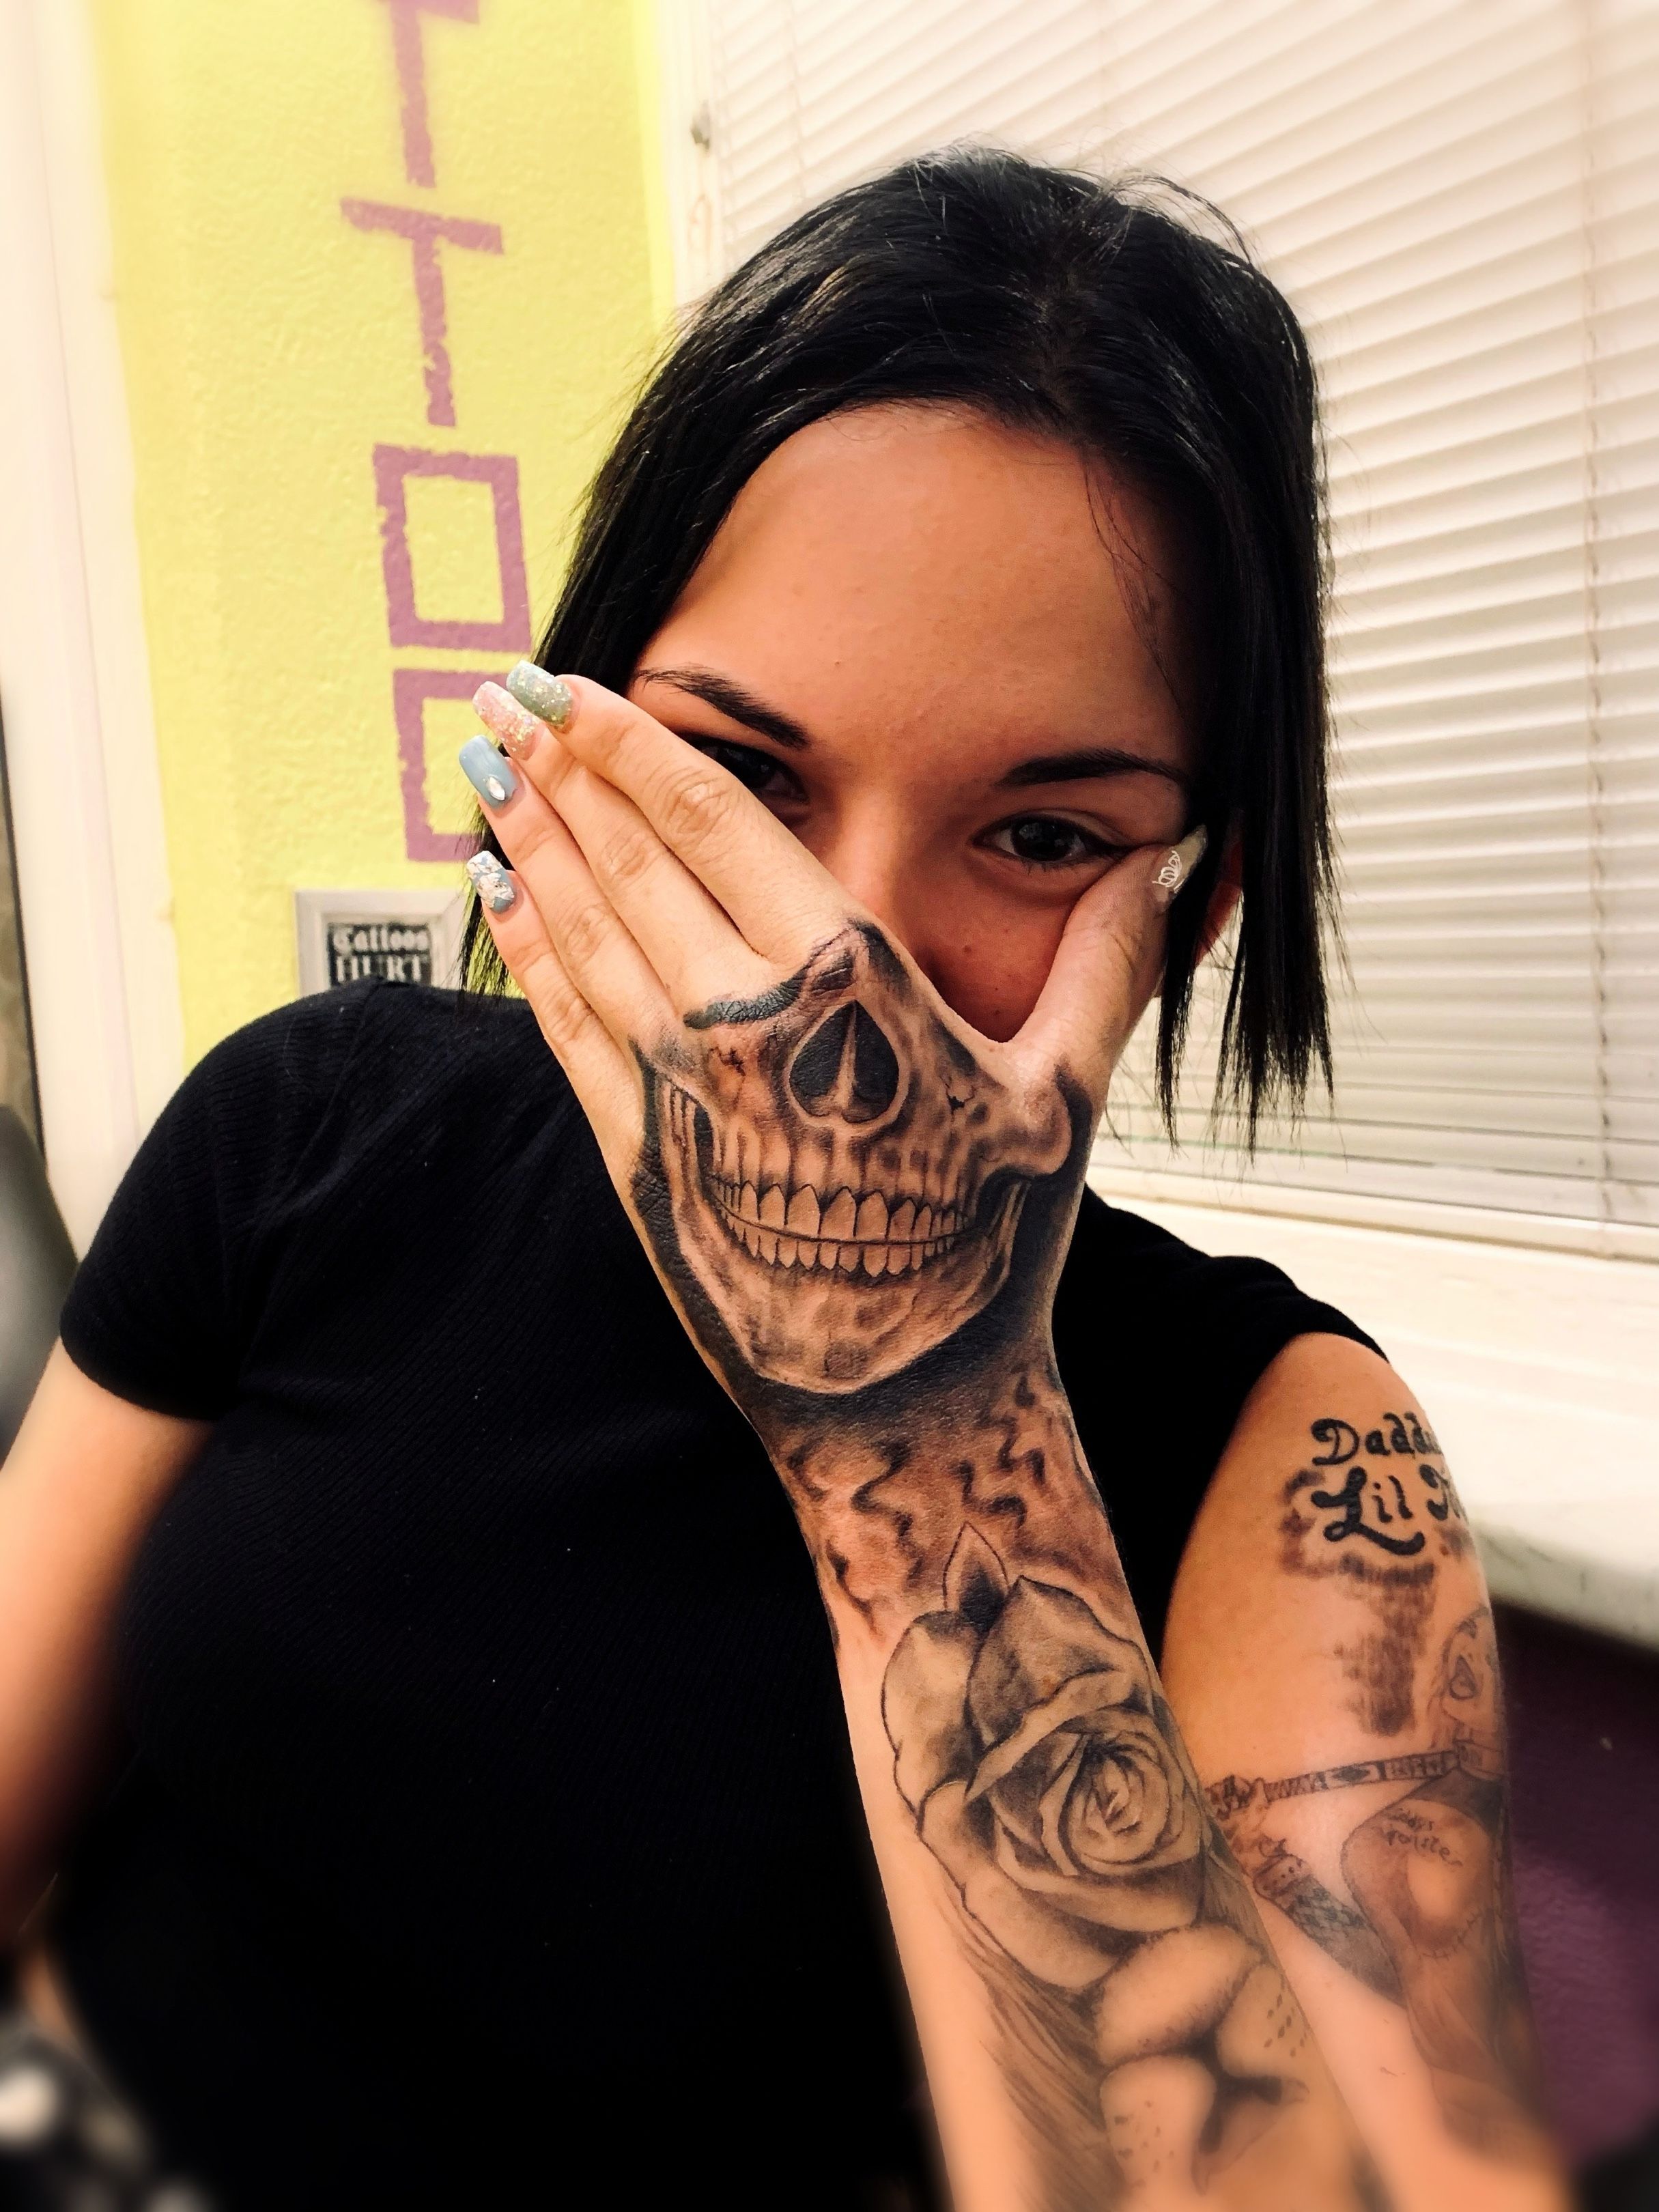 skeleton hand tattoos for girls